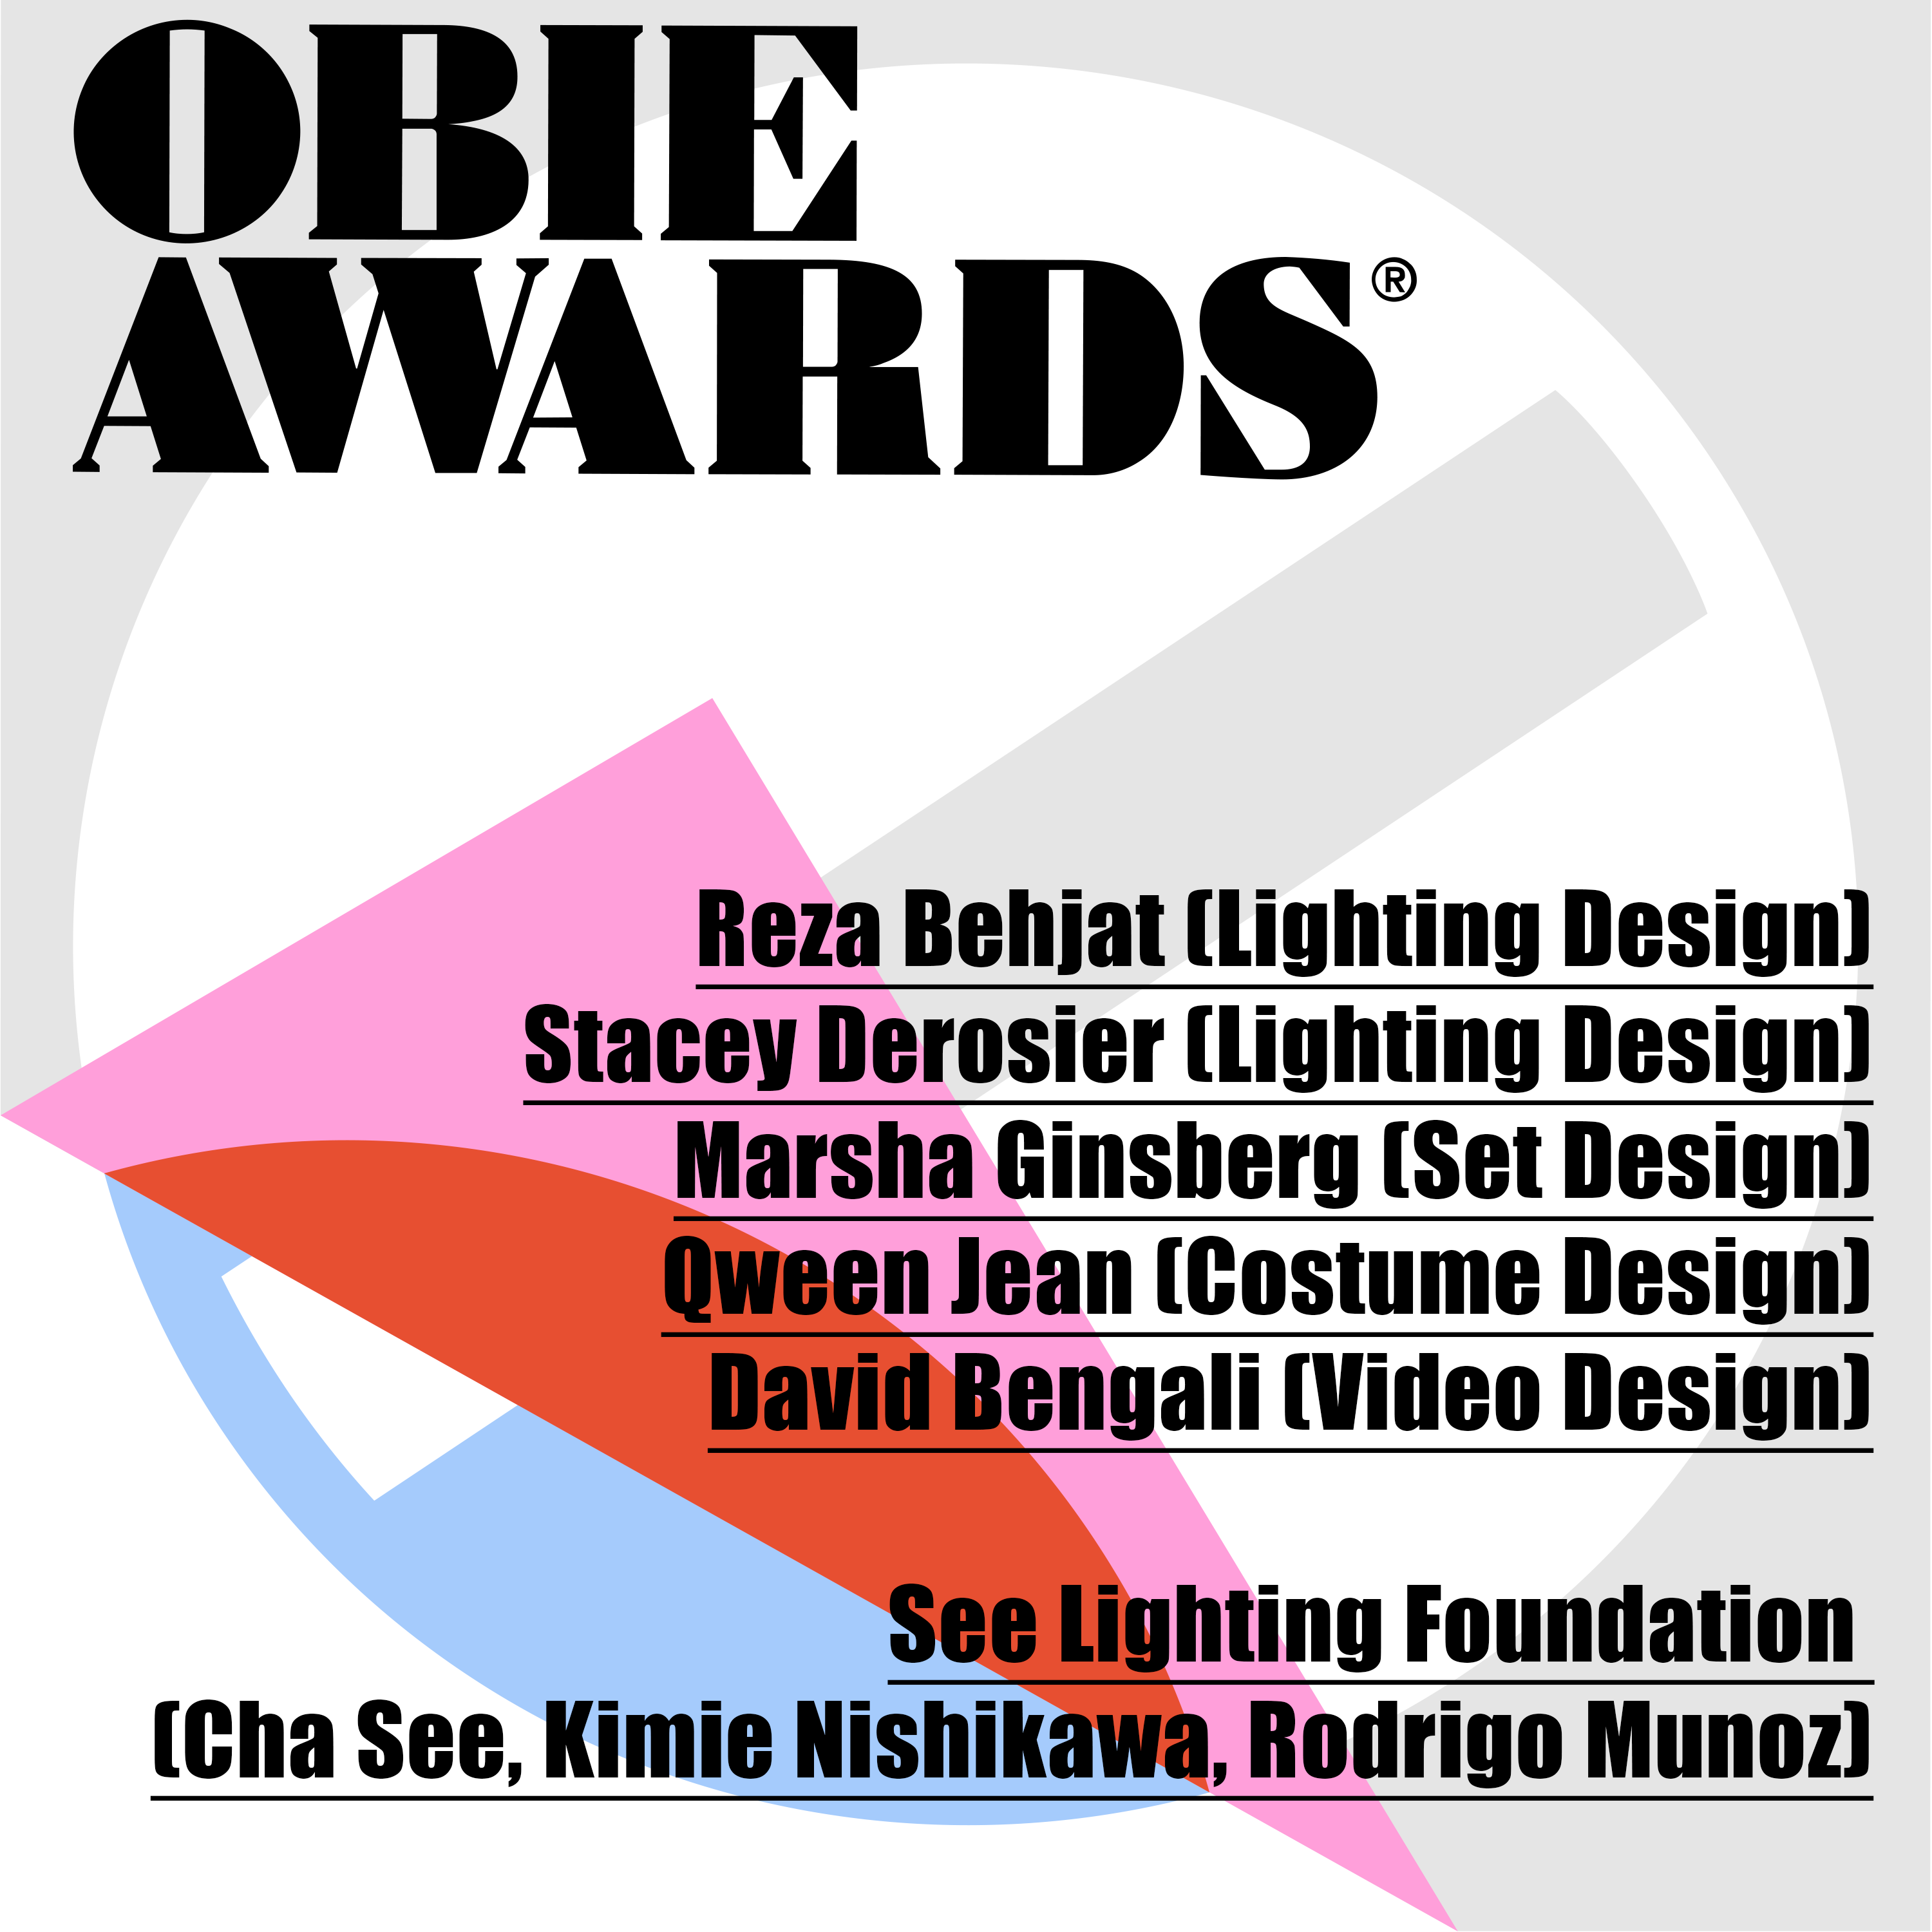 66th OBIE Awards Recognize Multiple Design Alumni